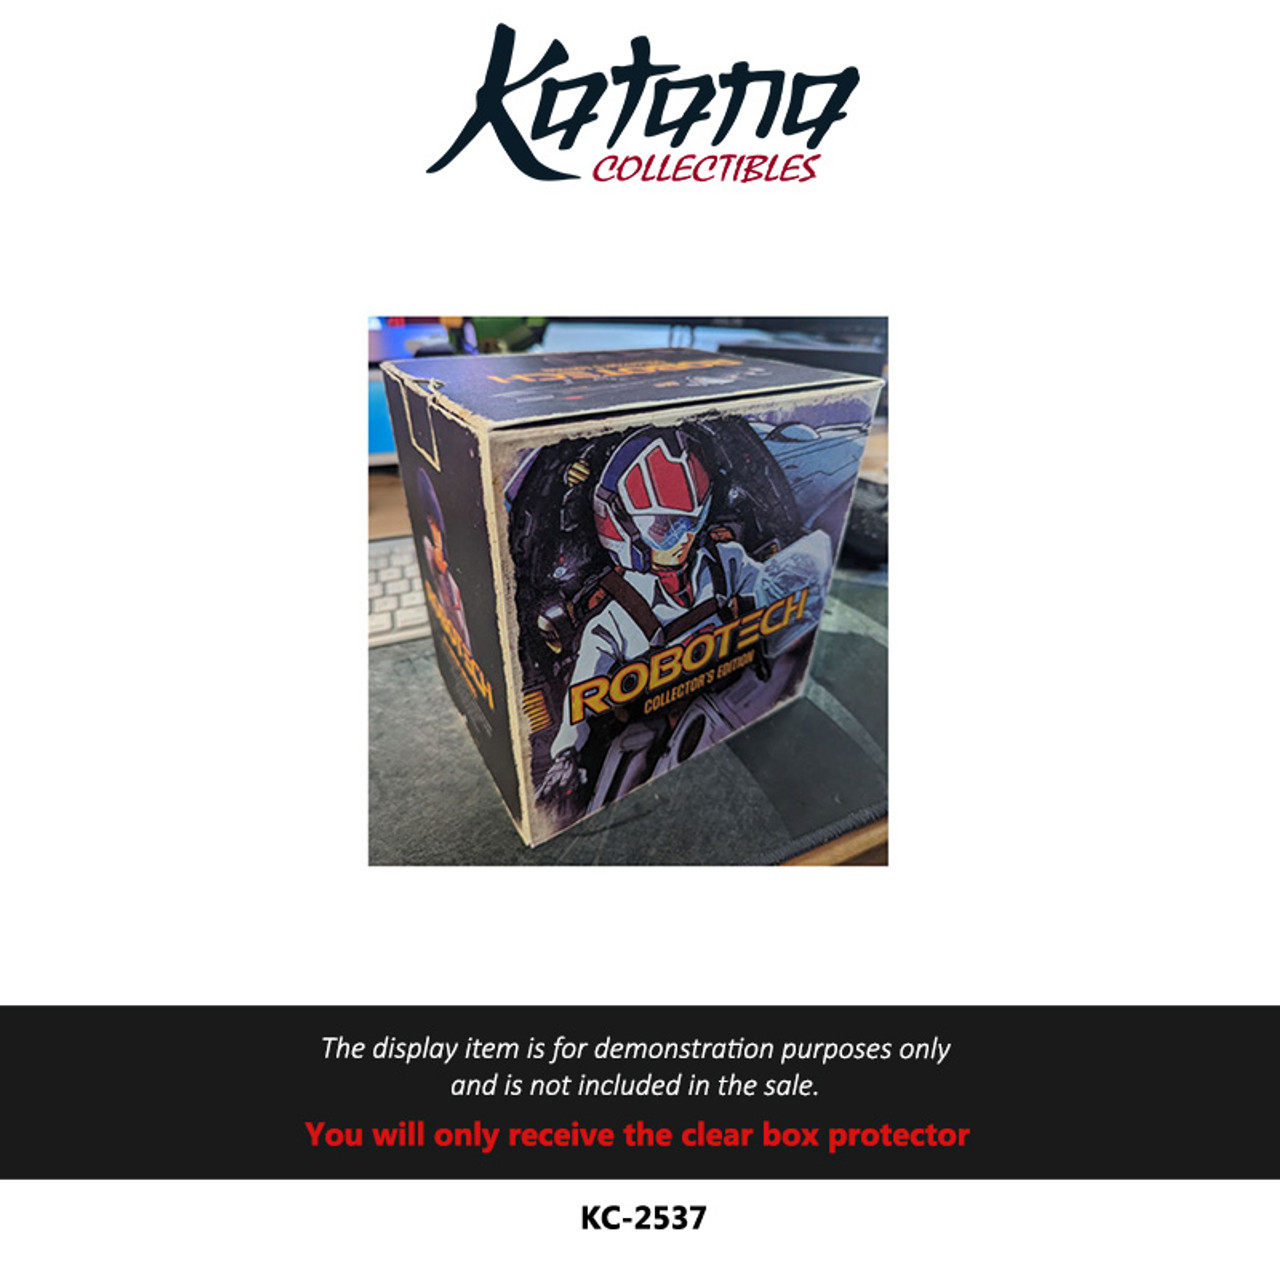 Katana Collectibles Protector For Robotech Collector's Edition